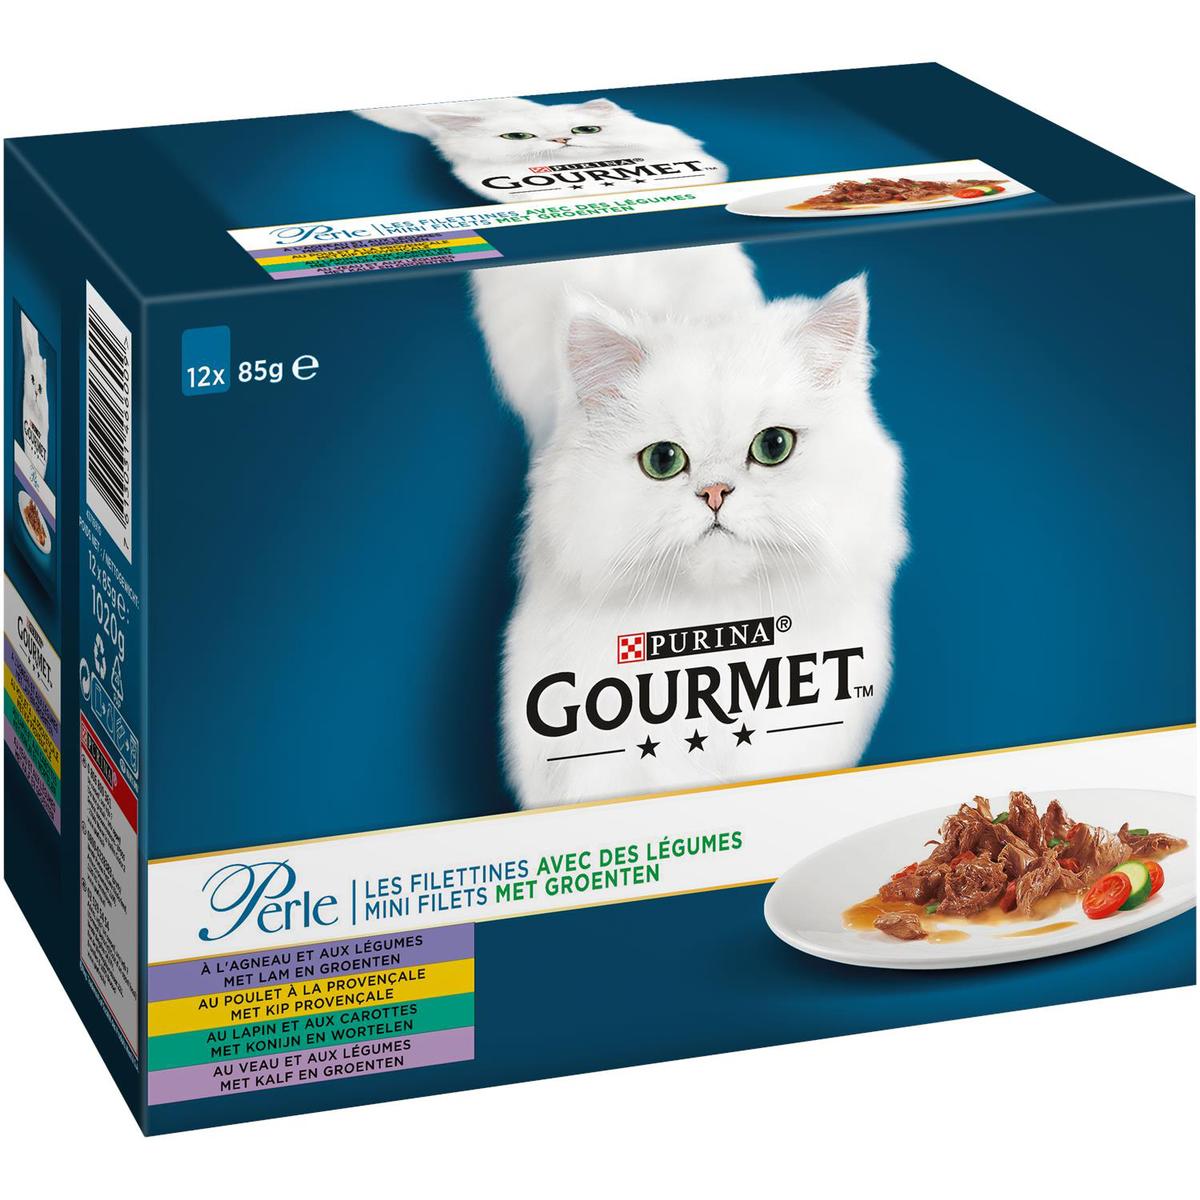 GOURMET GOLD Les Mousselines pour chat adulte - 24x85g